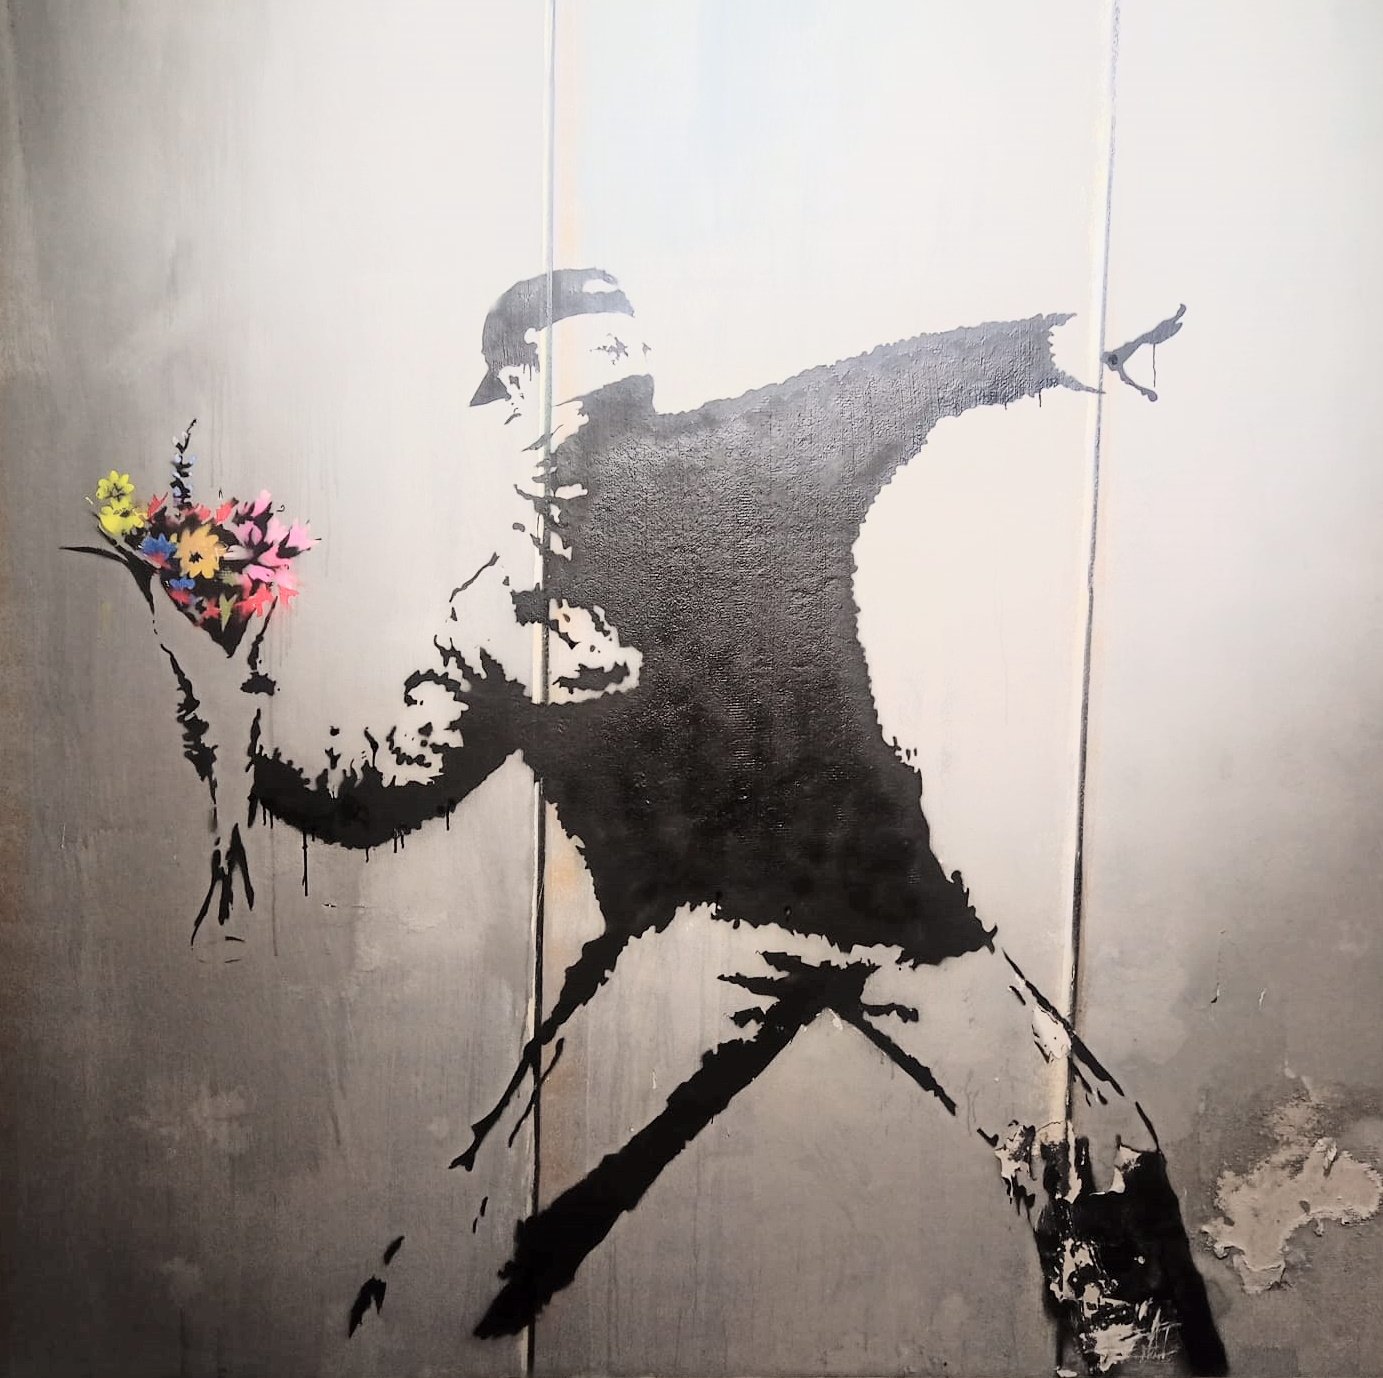 L'enigmàtic artista urbà Banksy s'instal·la a Catalunya